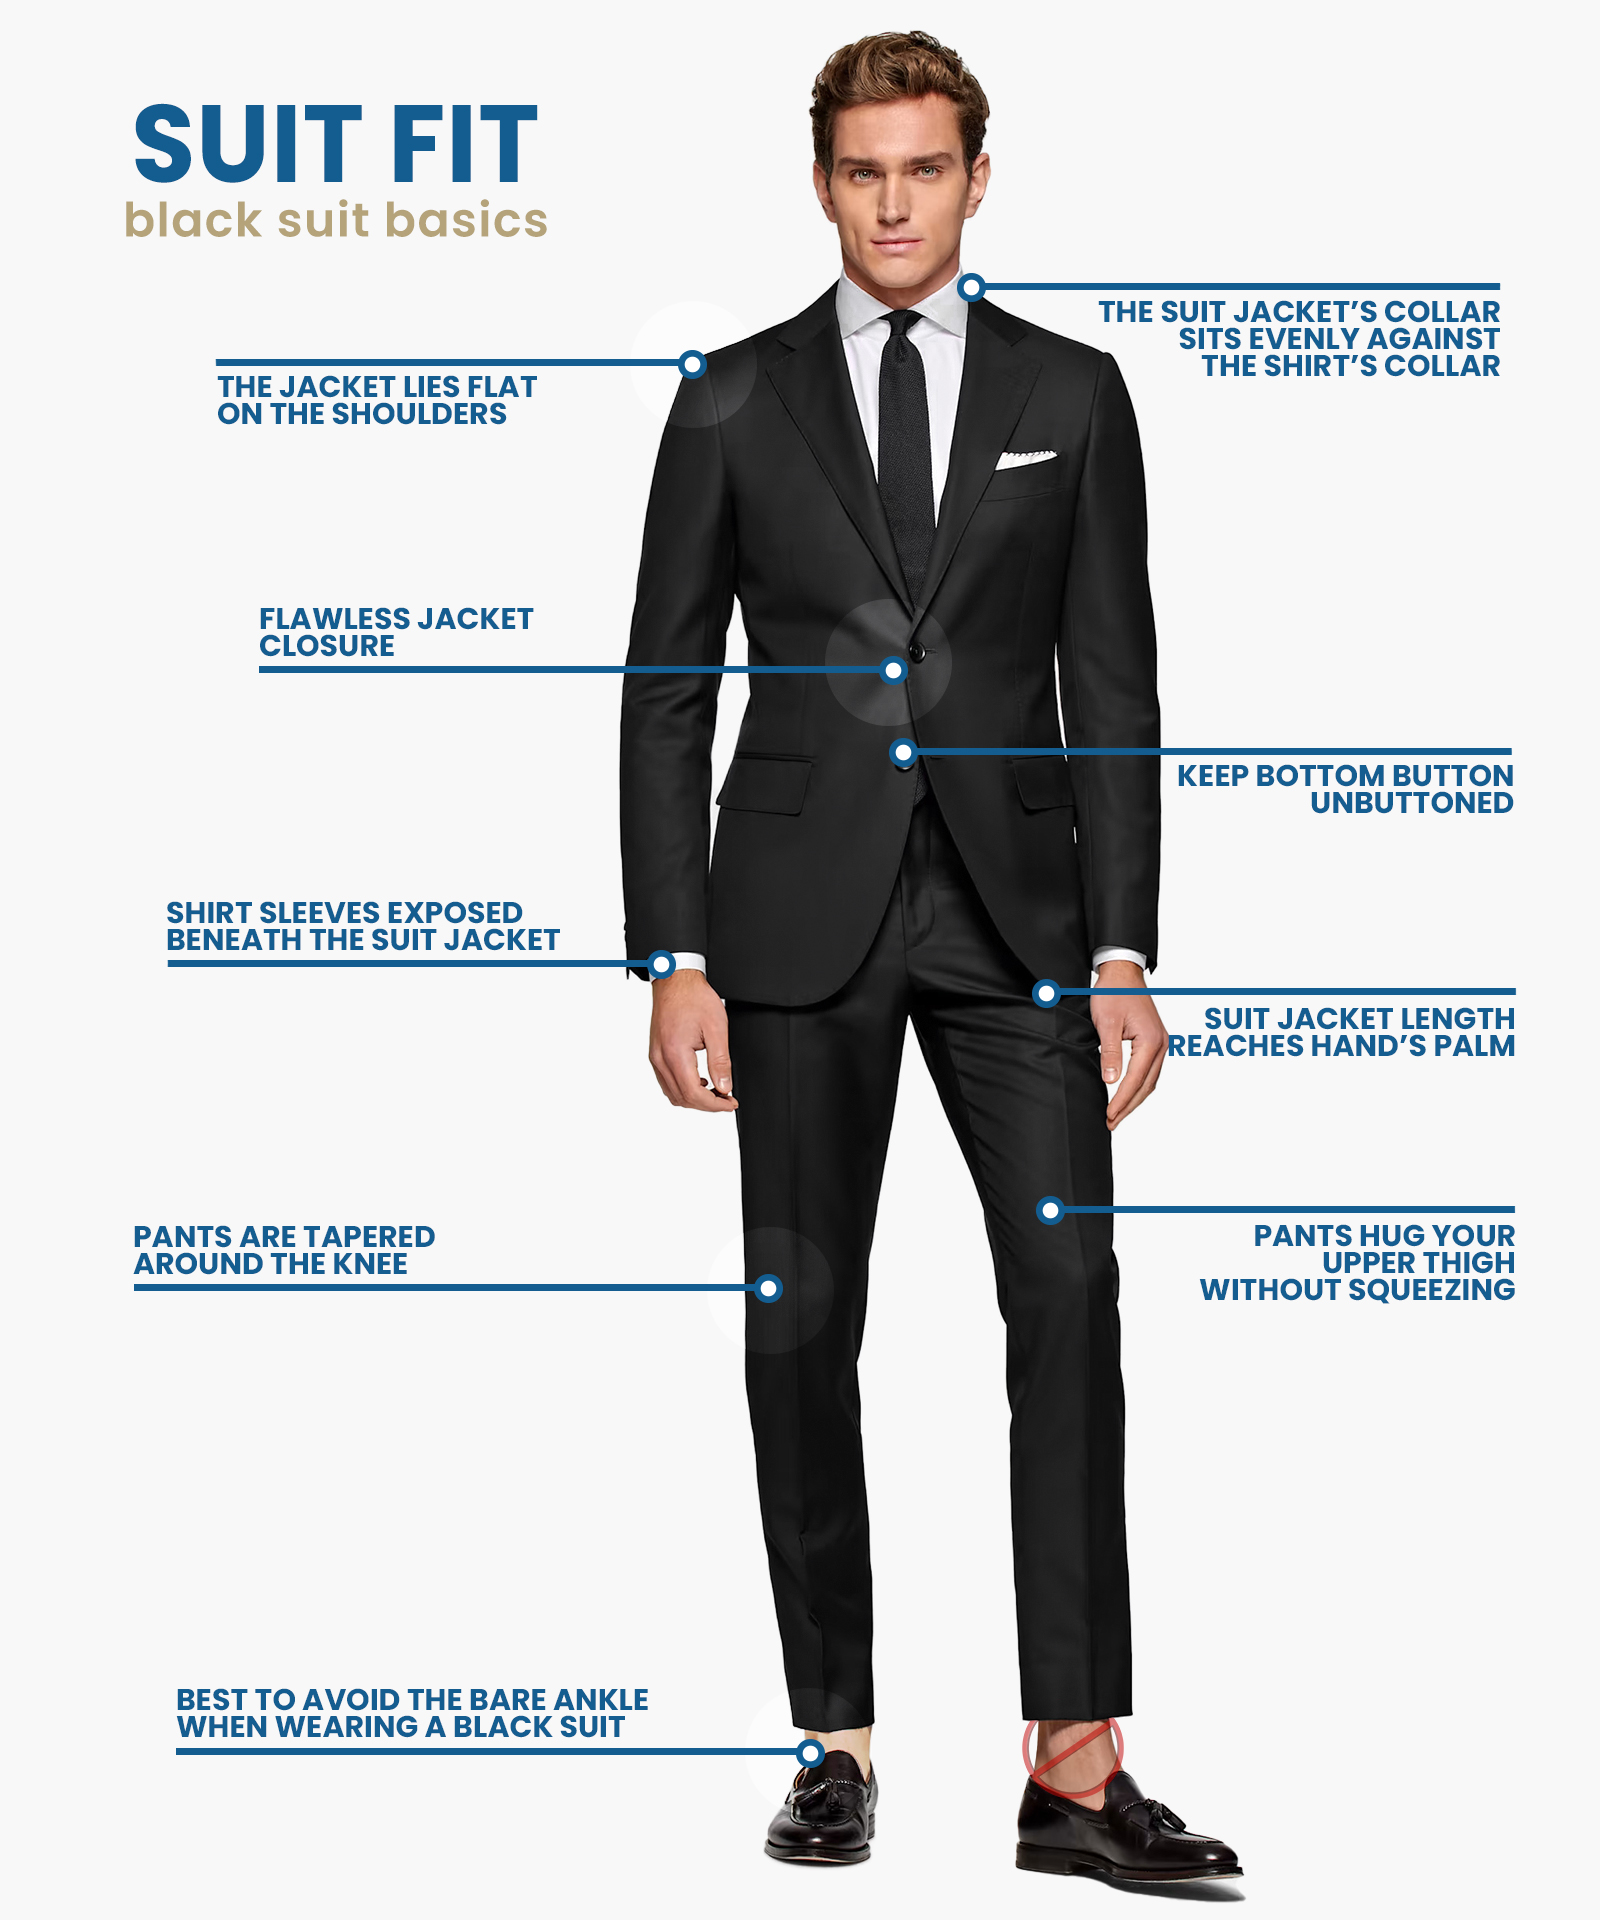 how should a black suit fit